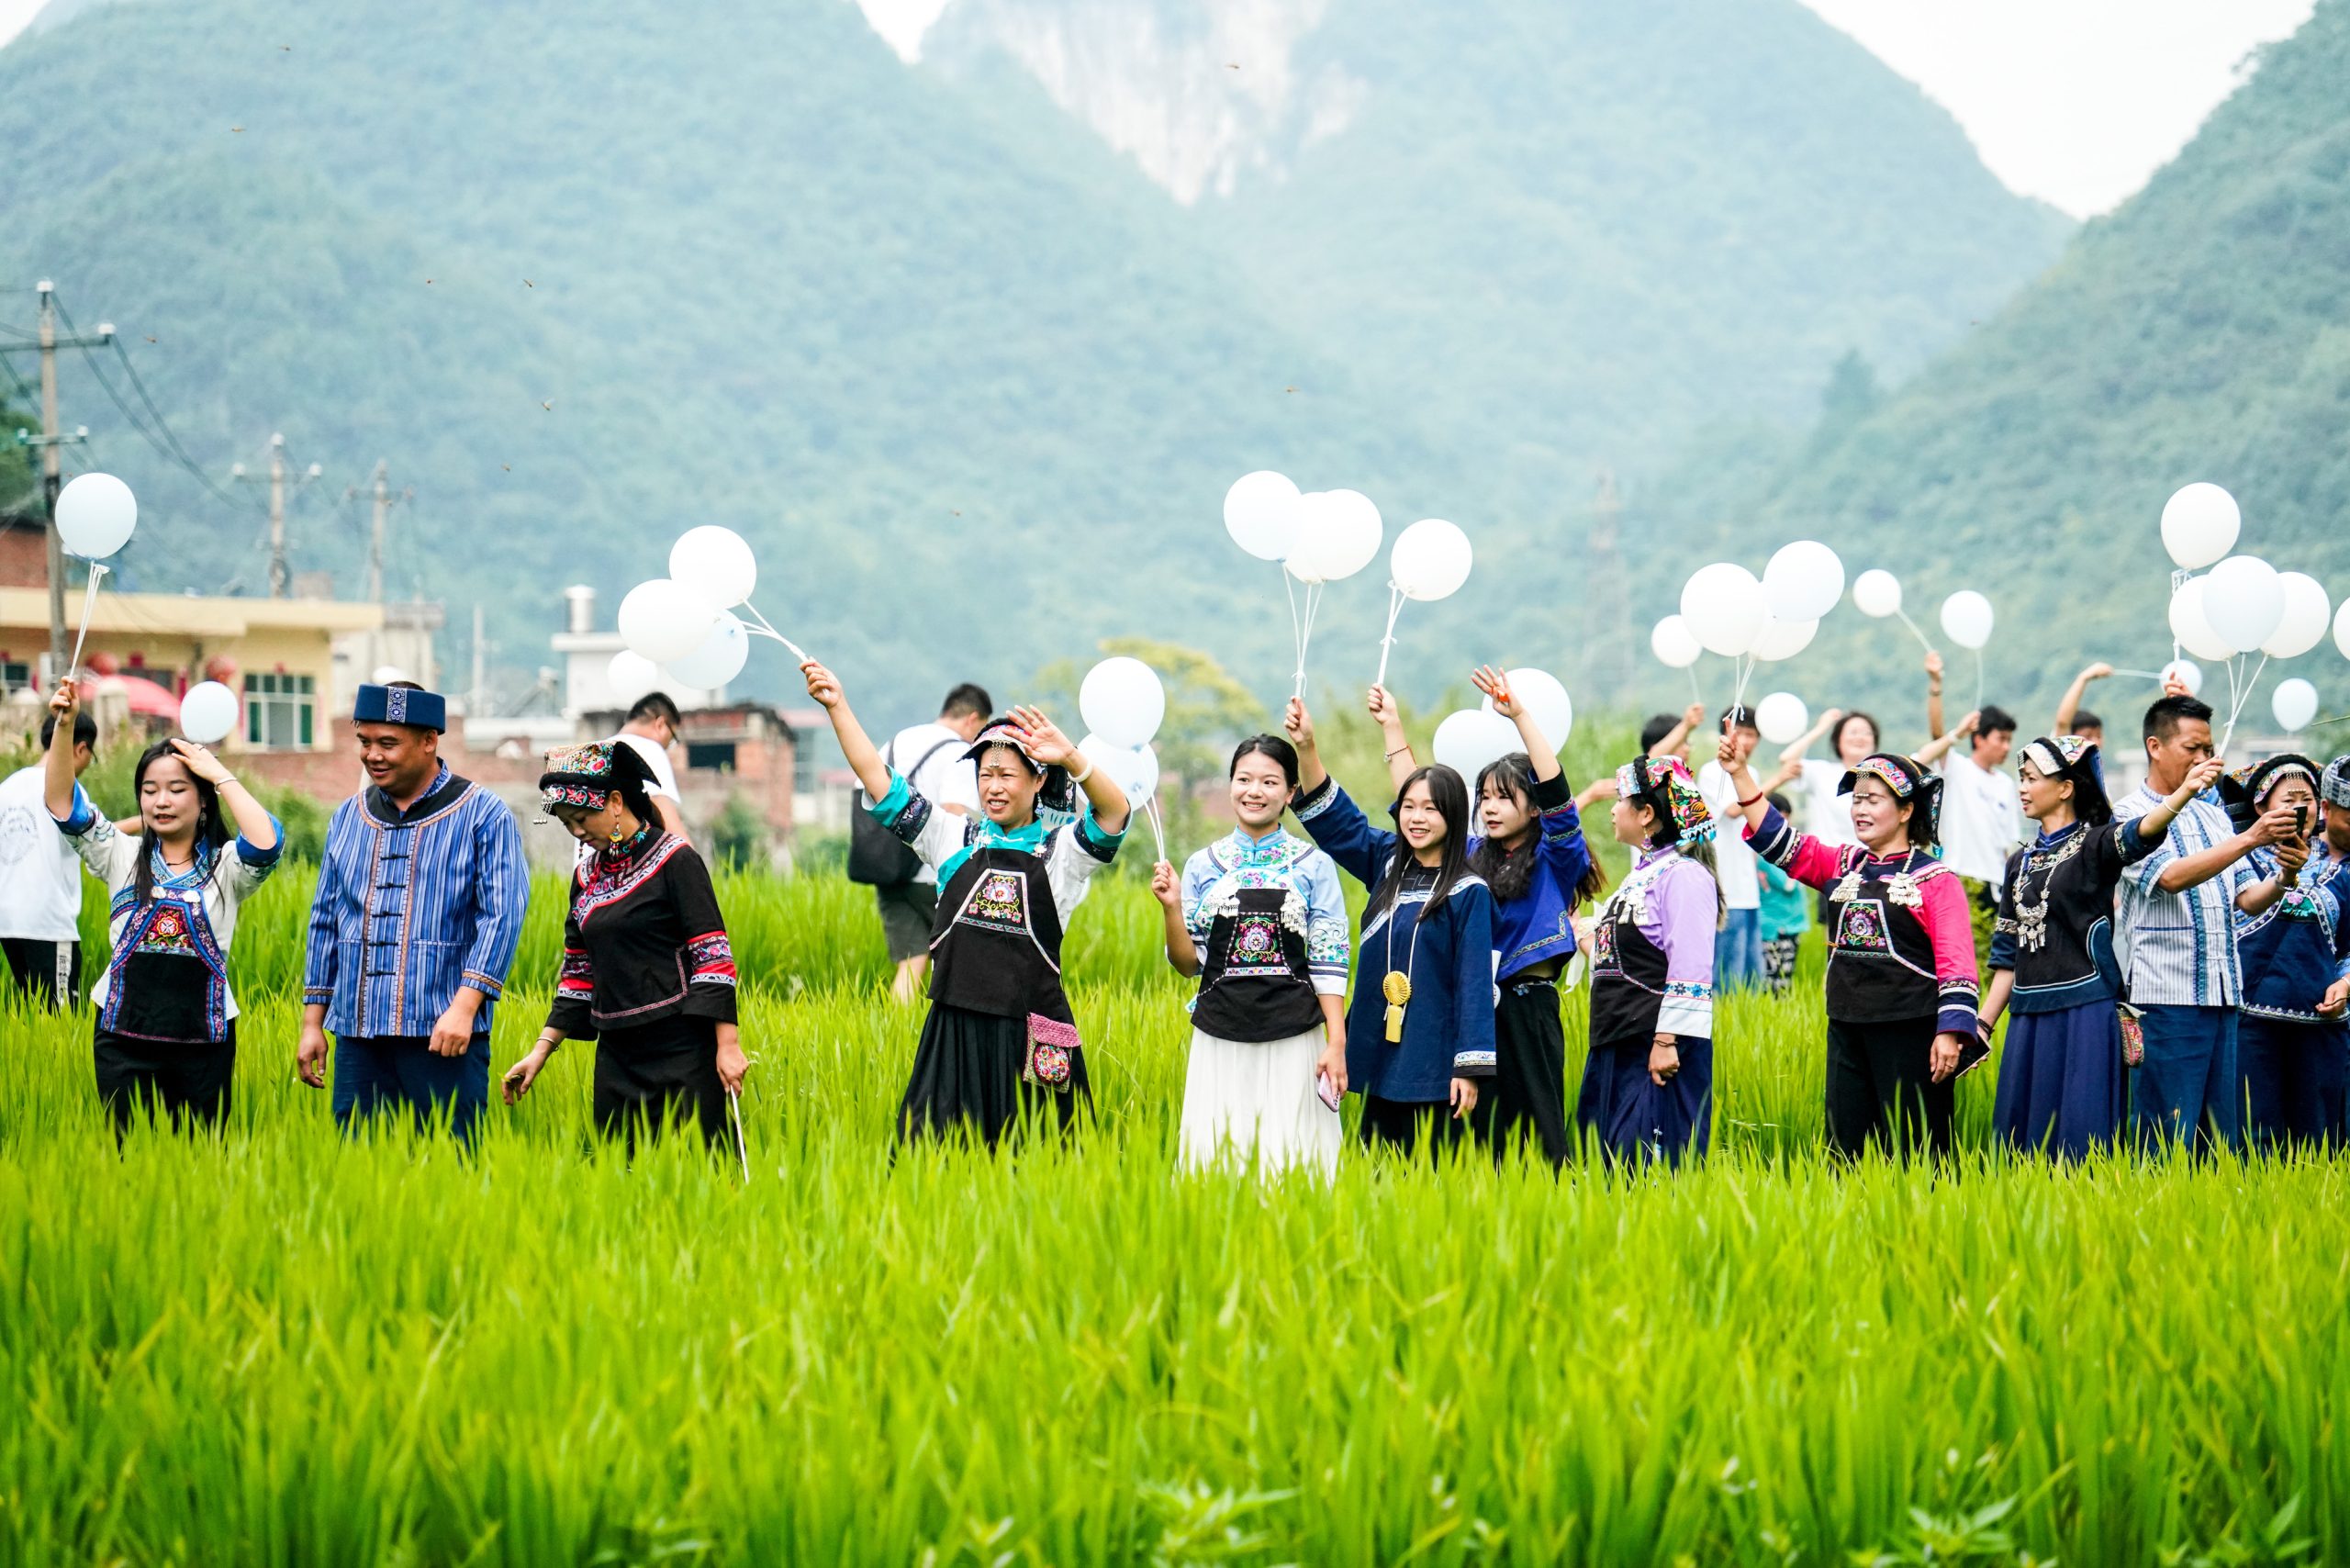 Joint workshop explores rural revitalisation in Guizhou